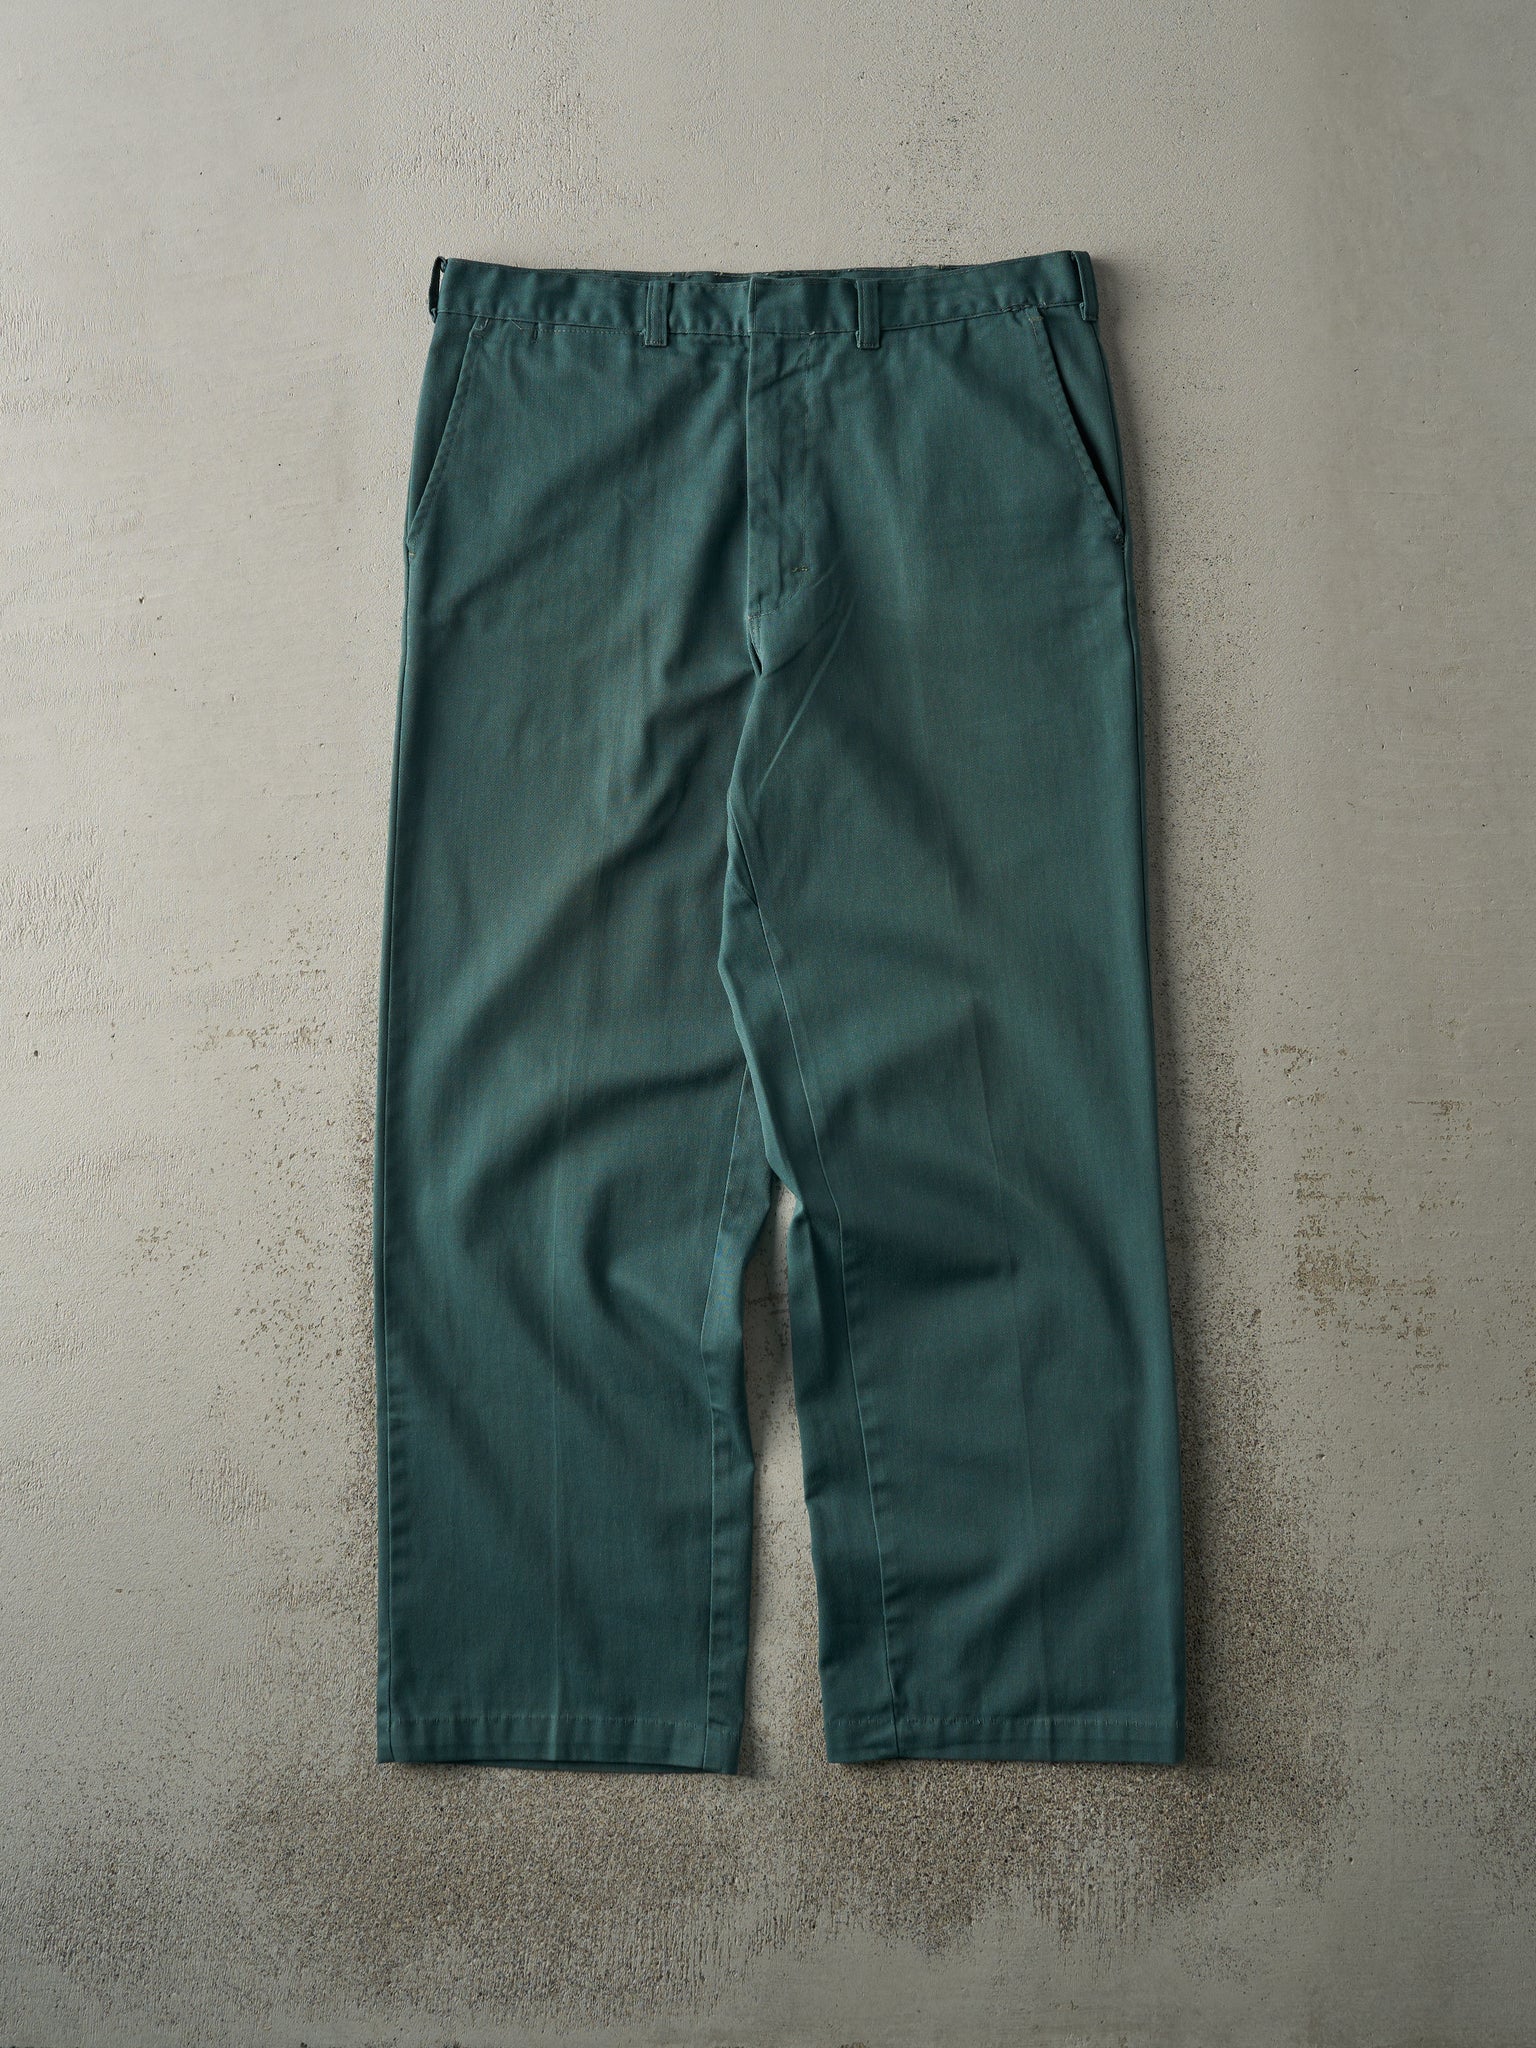 Vintage 90s Green Work Pants (34x28.5)